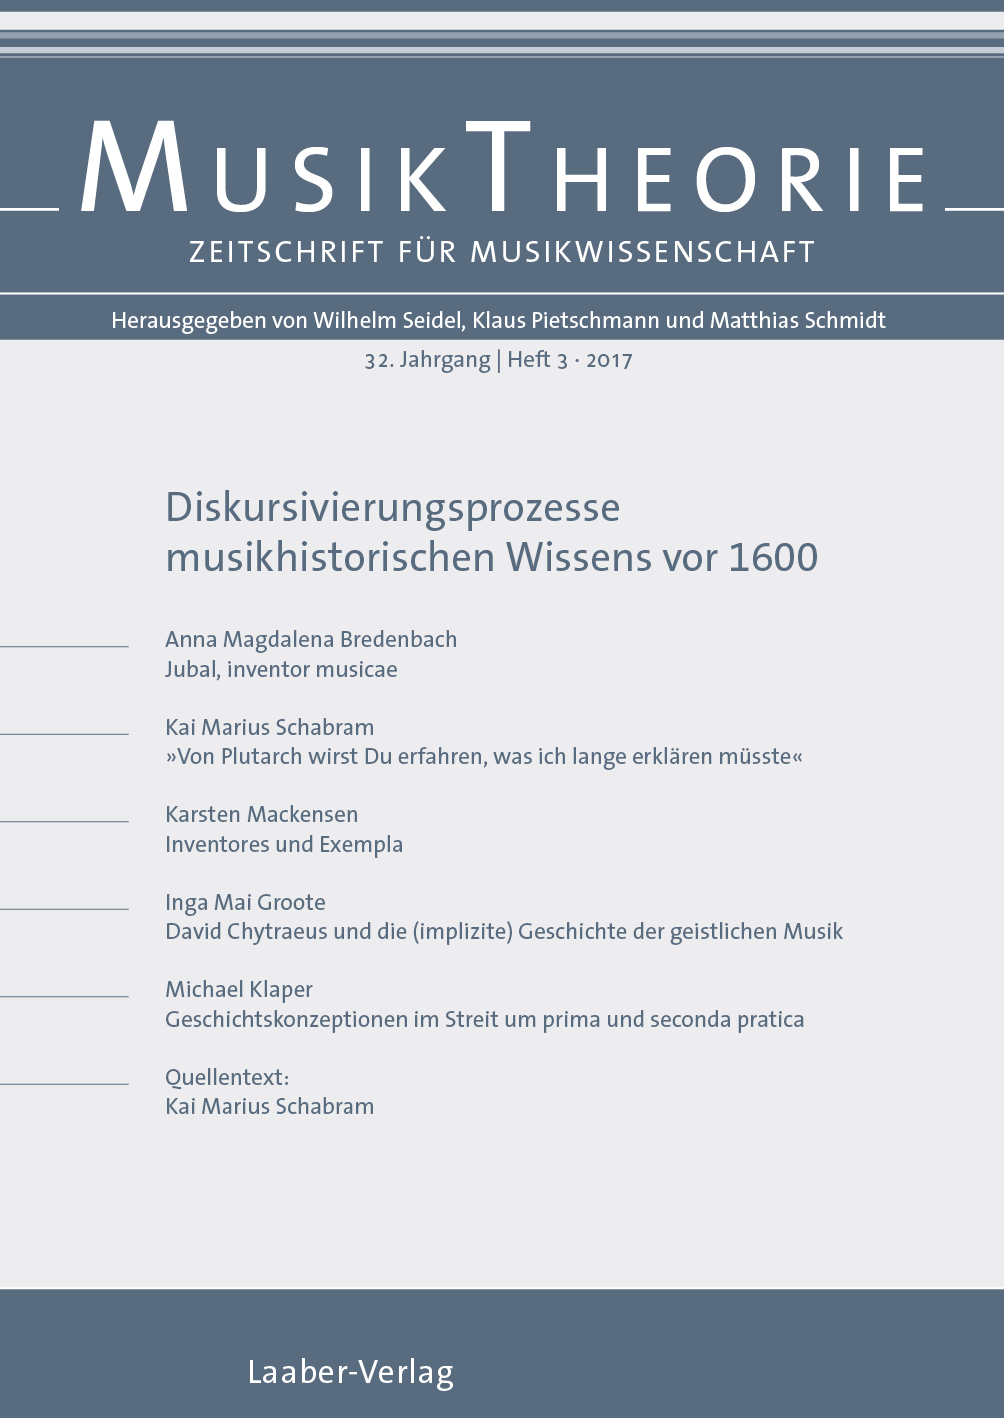 Musiktheorie Heft 3/2017